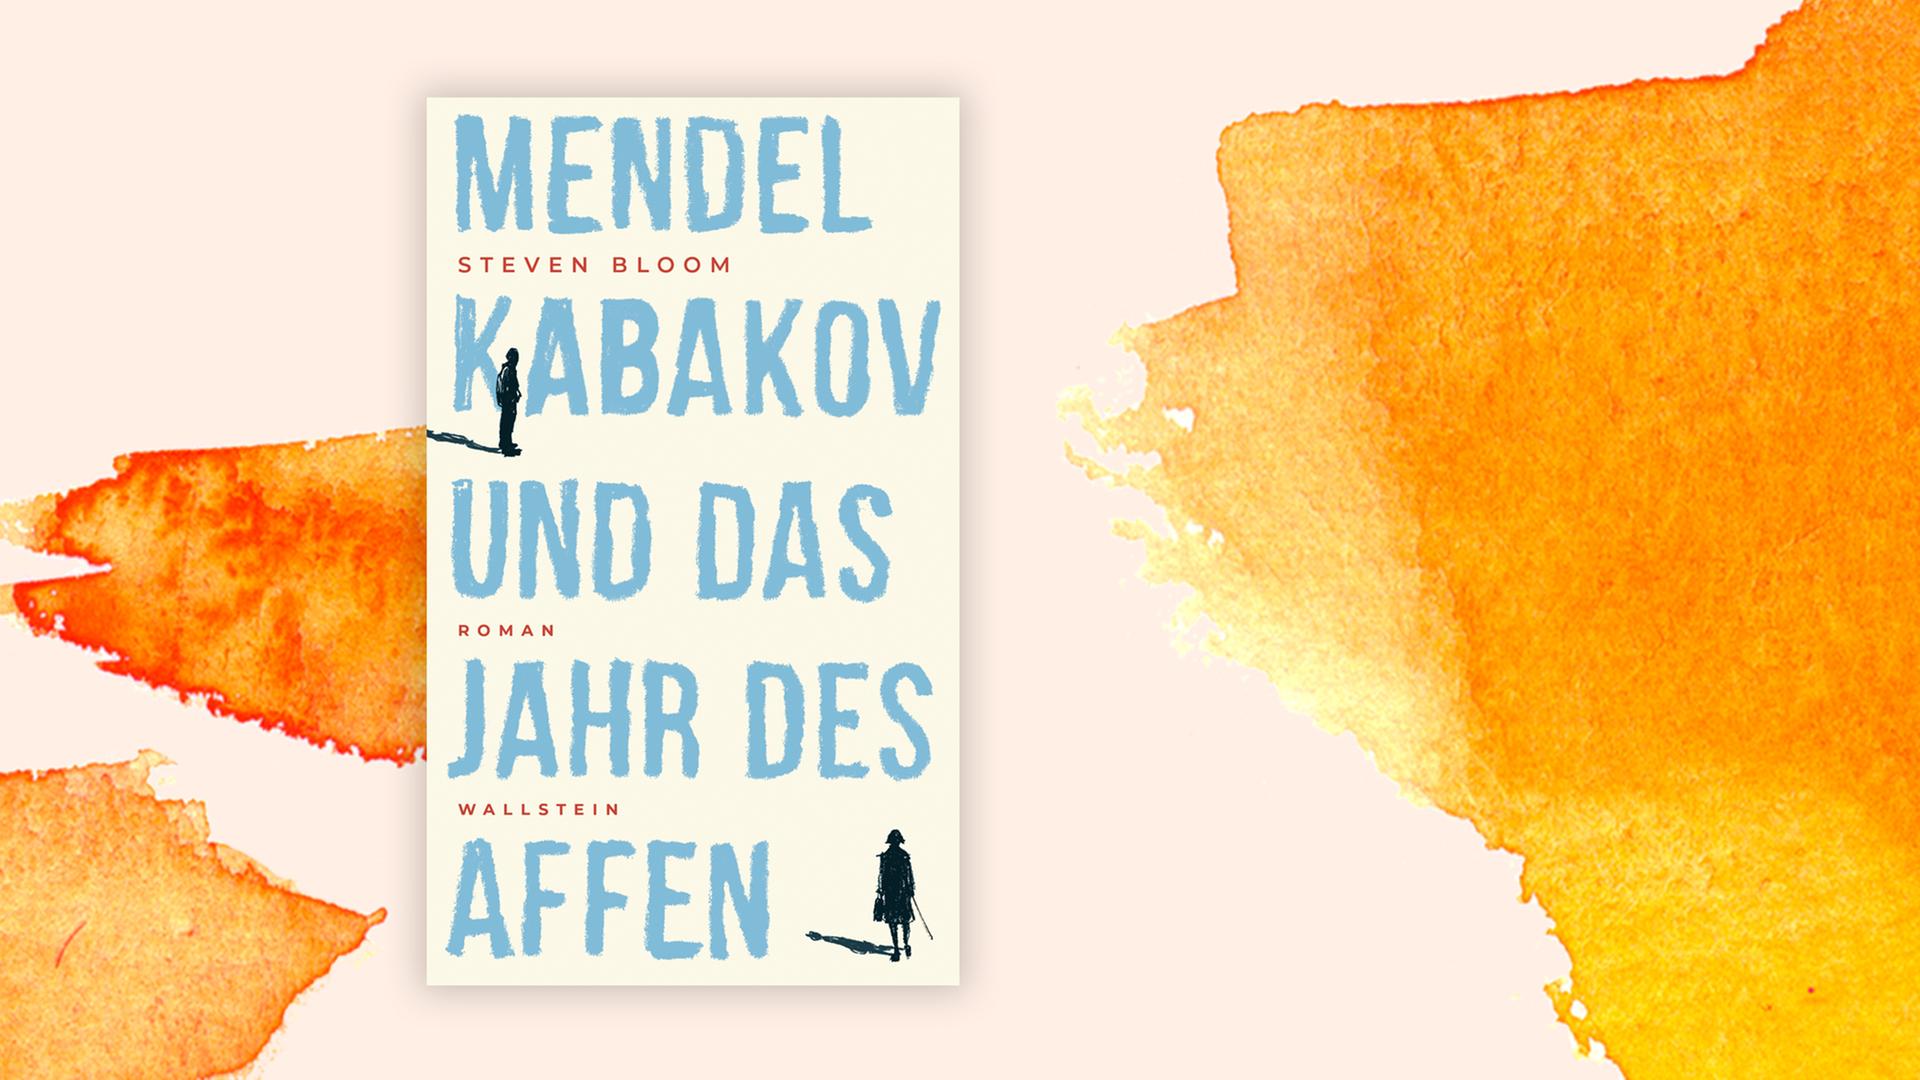 Das Cover des Buches "Mendel Kabakov und das Jahr des Affen" von Steven Bloom